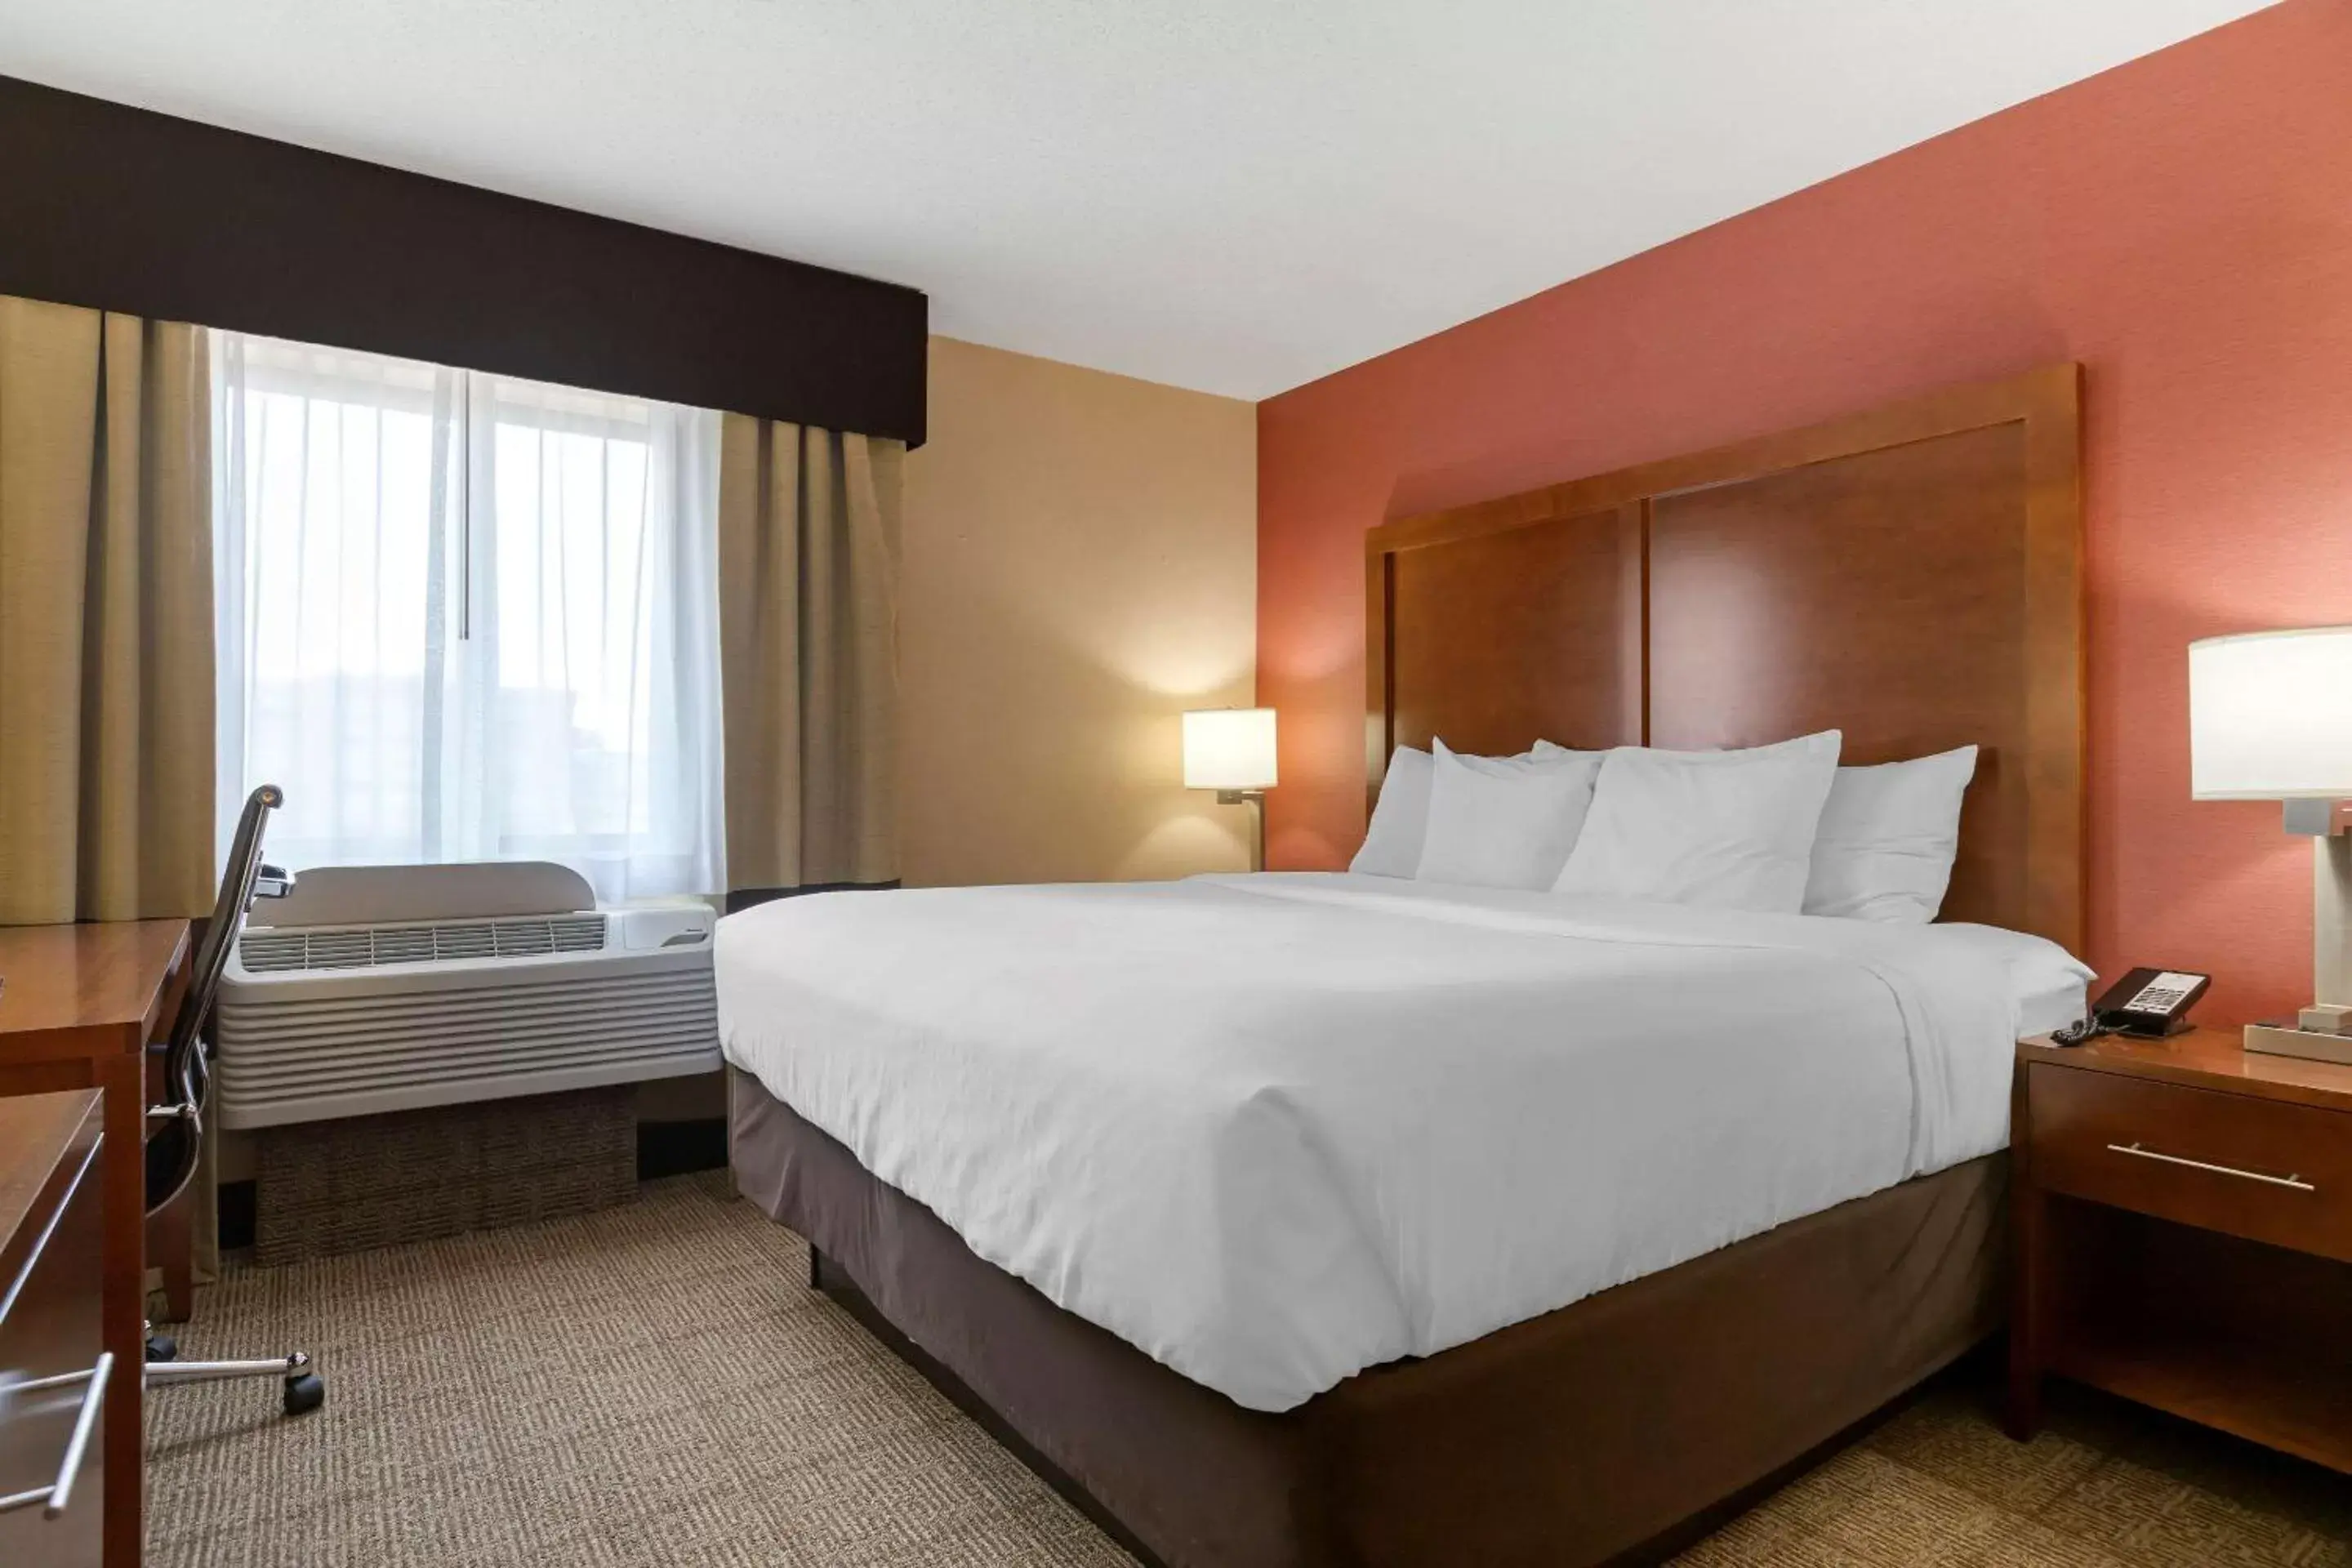 Bedroom, Bed in Comfort Inn & Suites - Jackson